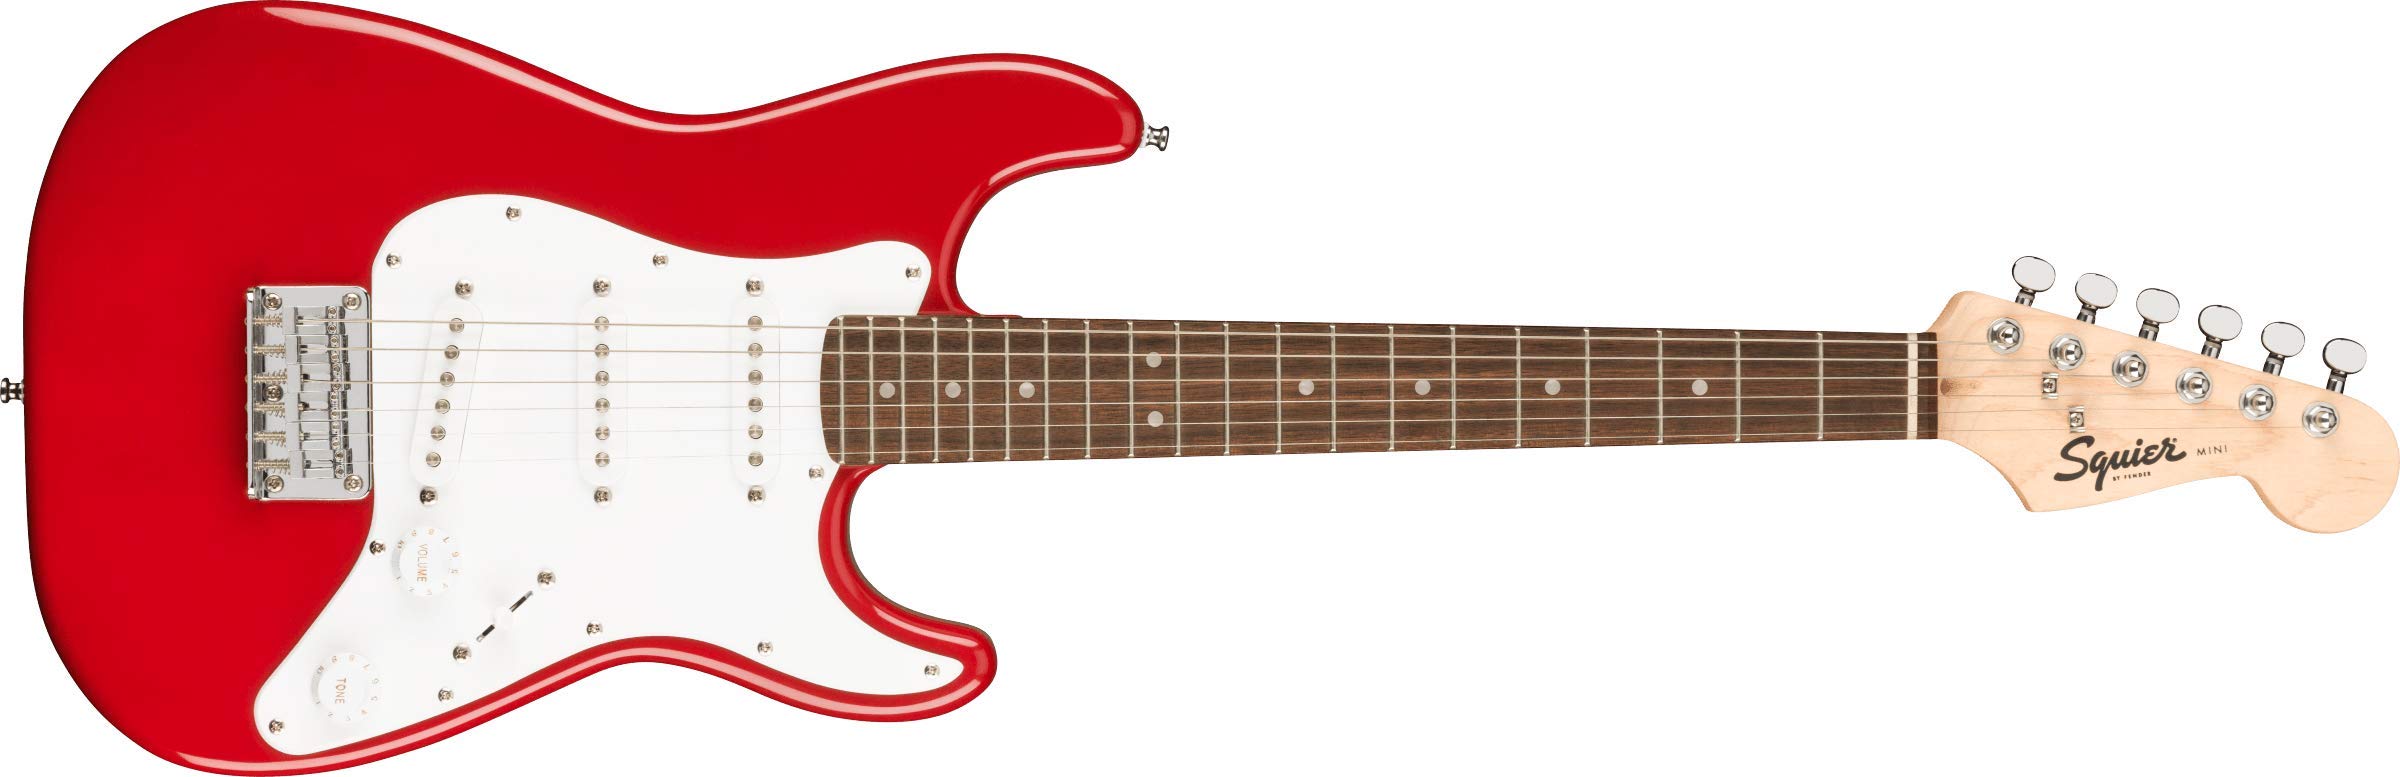 Squier 미니 스트랫 일렉트릭 기타 - 로렐 핑거보드가 있는 다코타 레드...